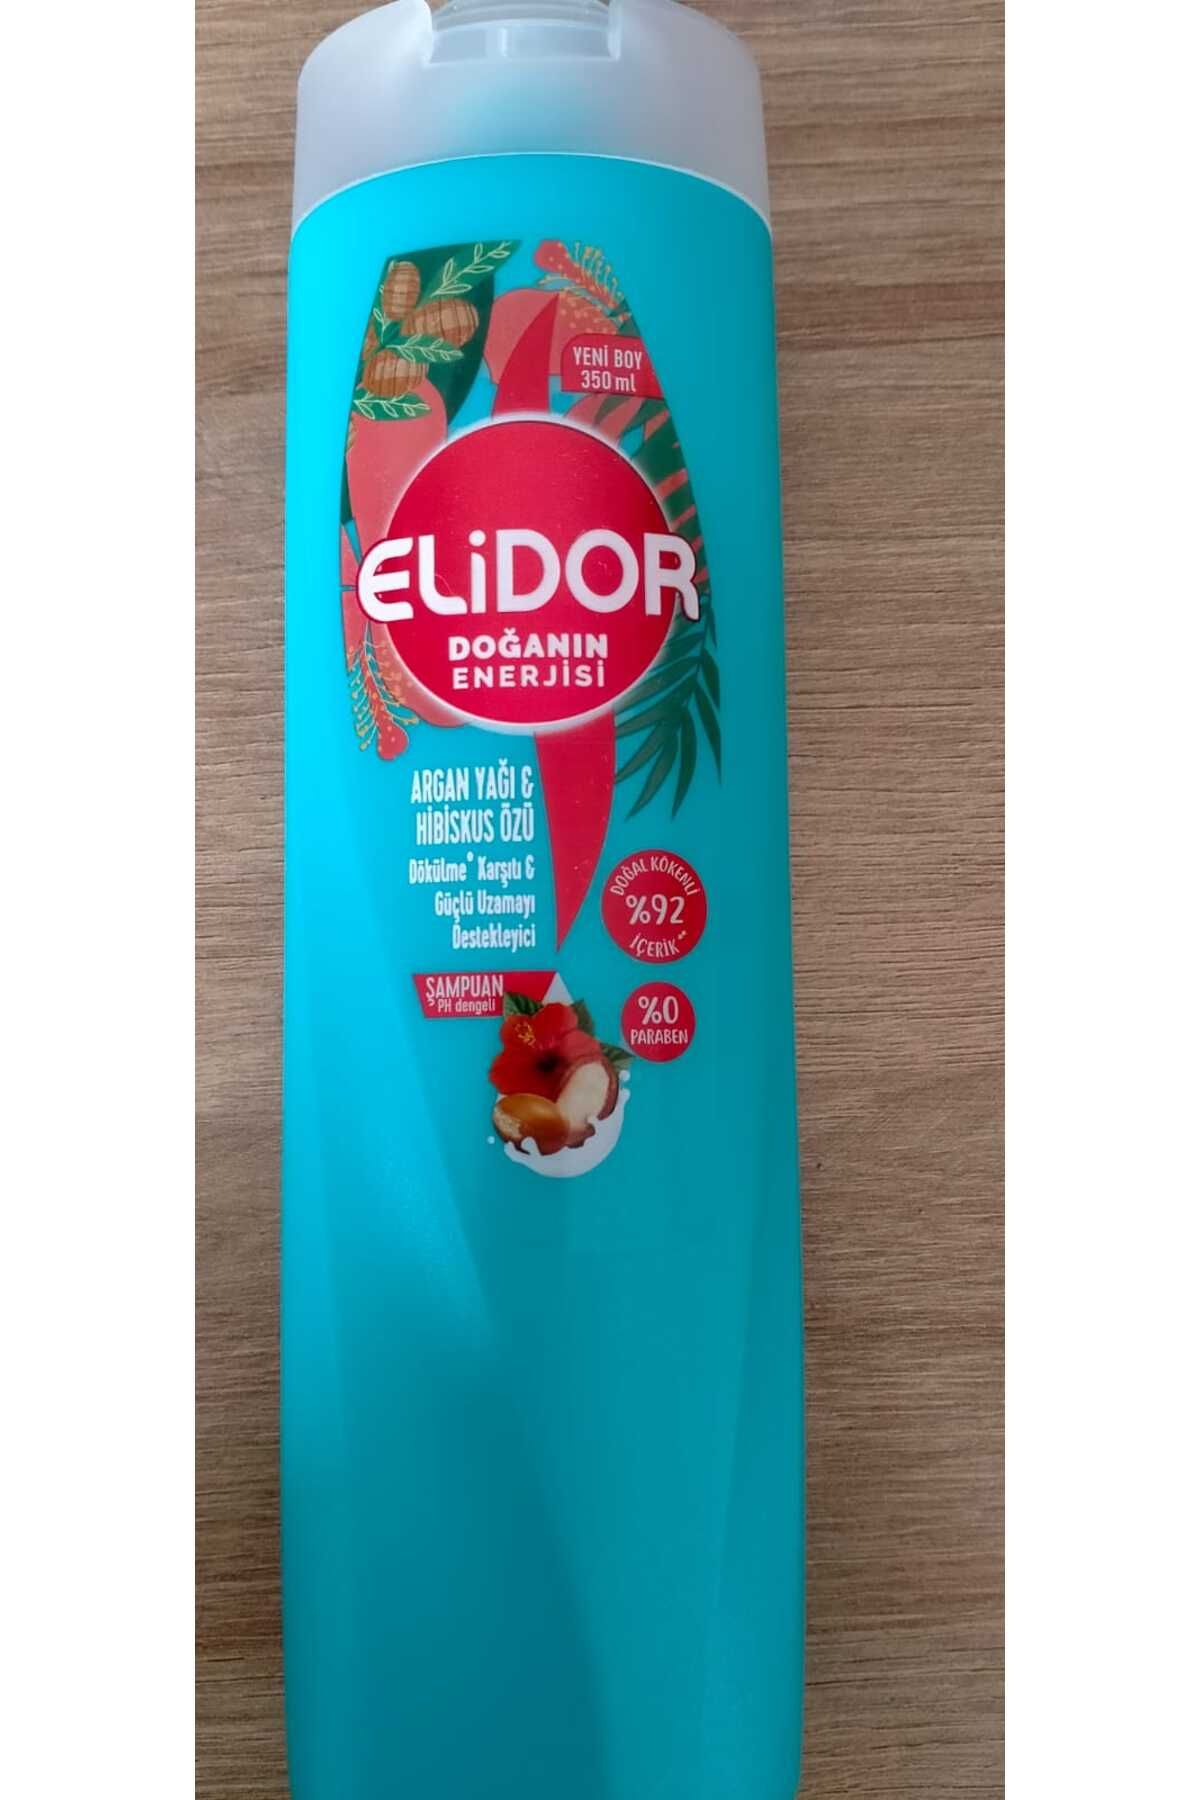 Elidor Argan Yağı & Hibiskus Özü Şampuan, Dökülme Karşıtı-Güçlü Uzamayı Destekleyici YENİ BOY:350 ML